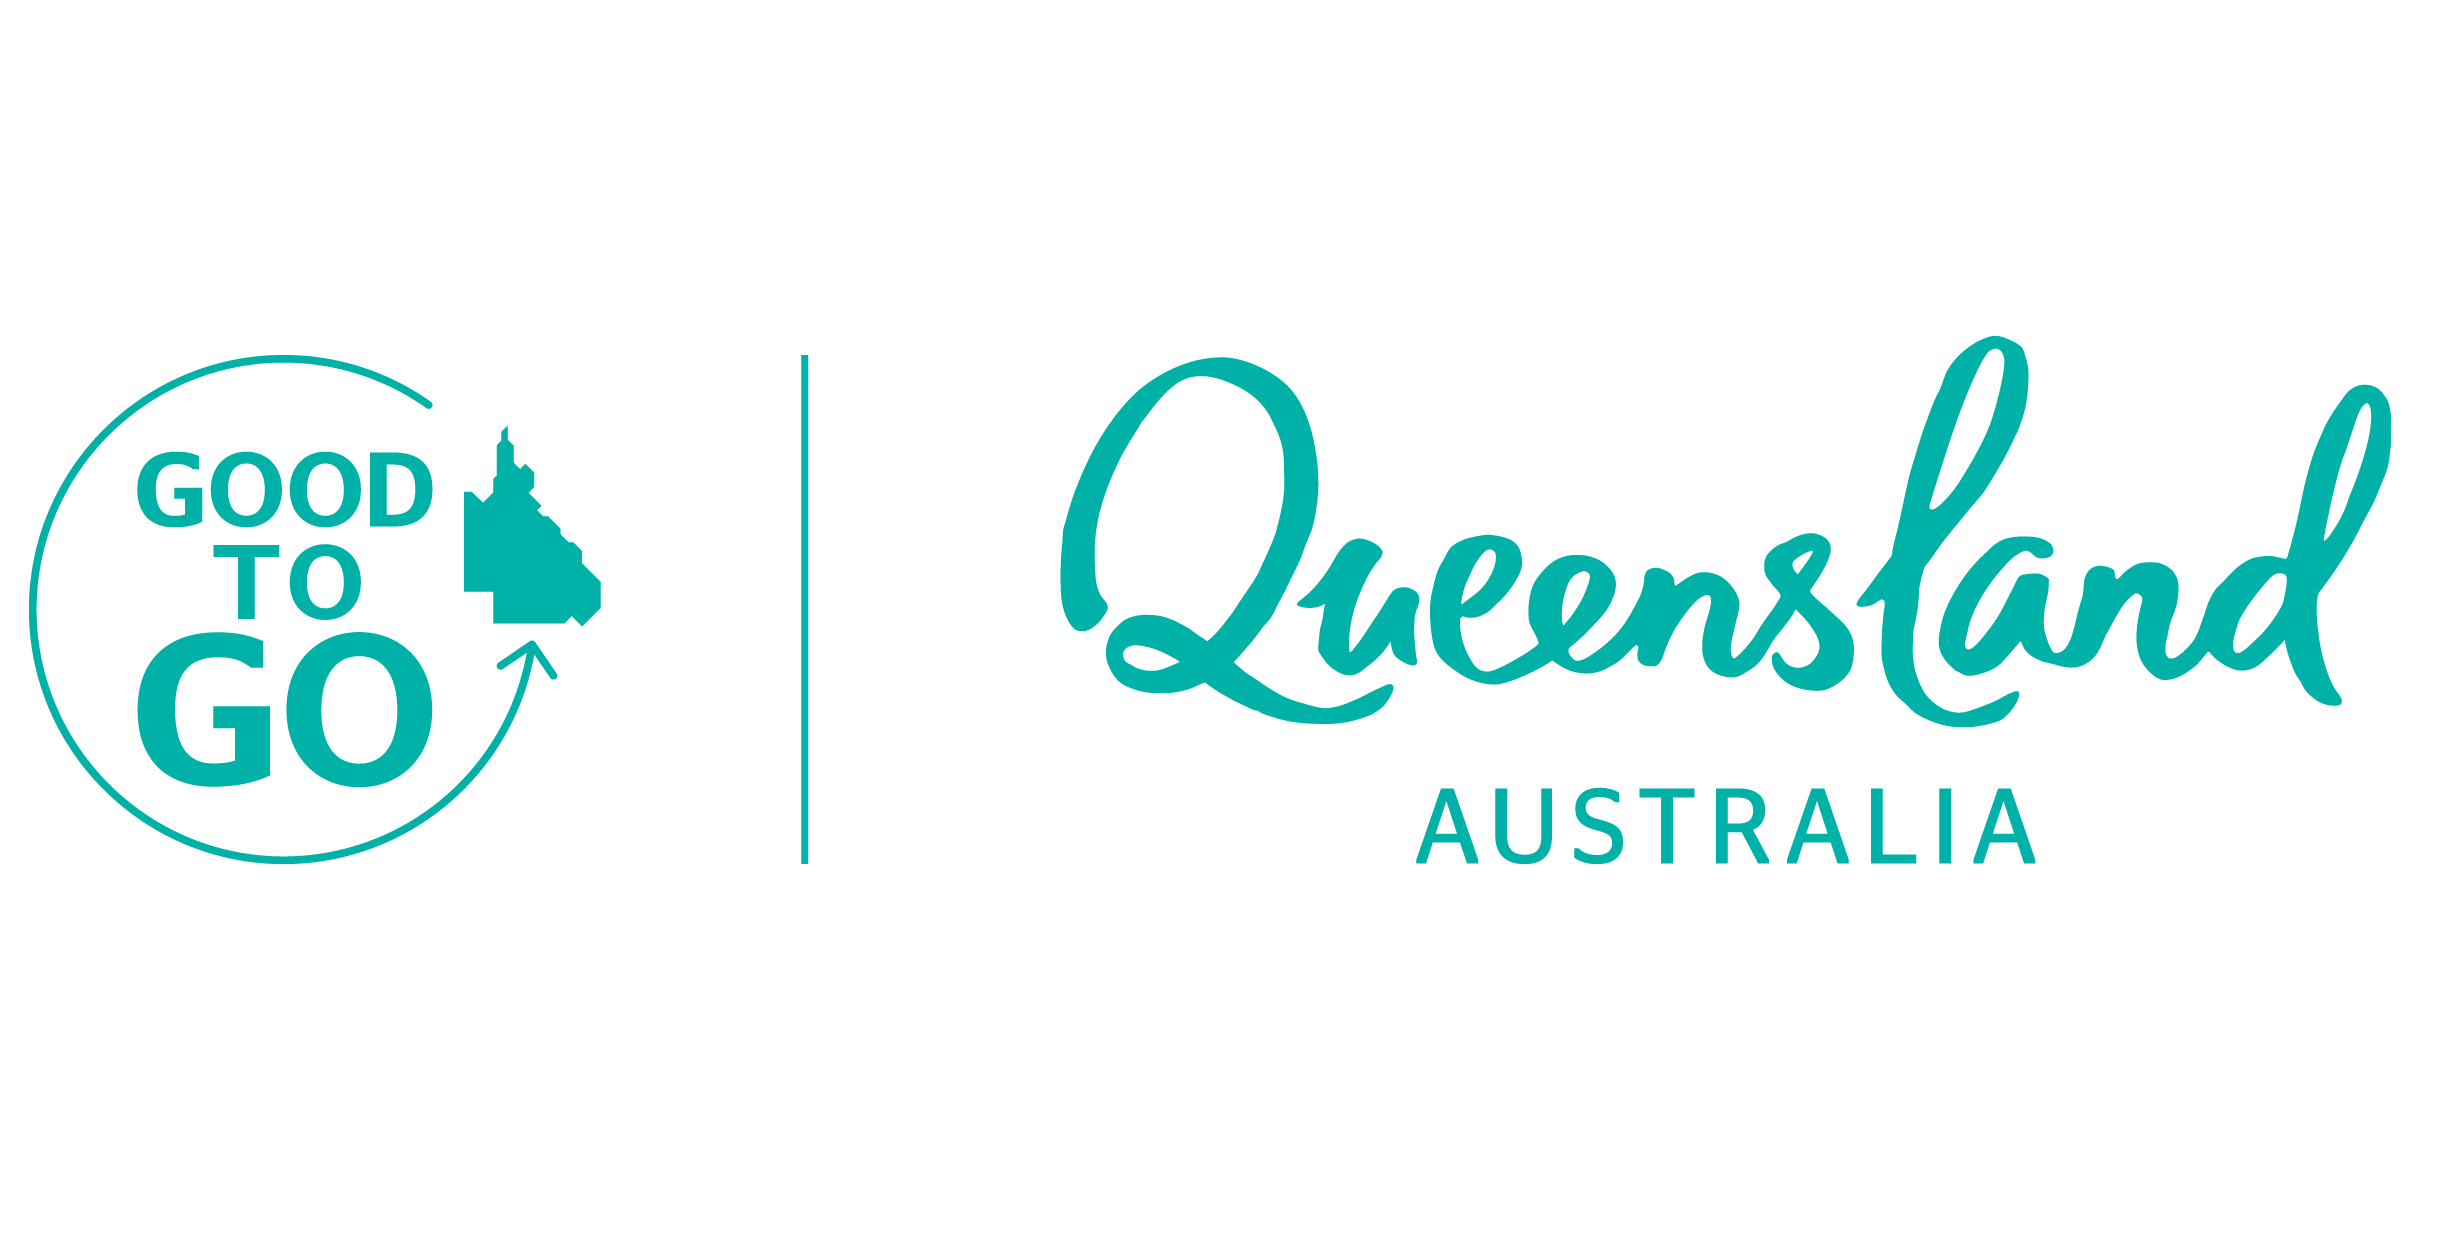 Tourism-Queensland-Australia-logo